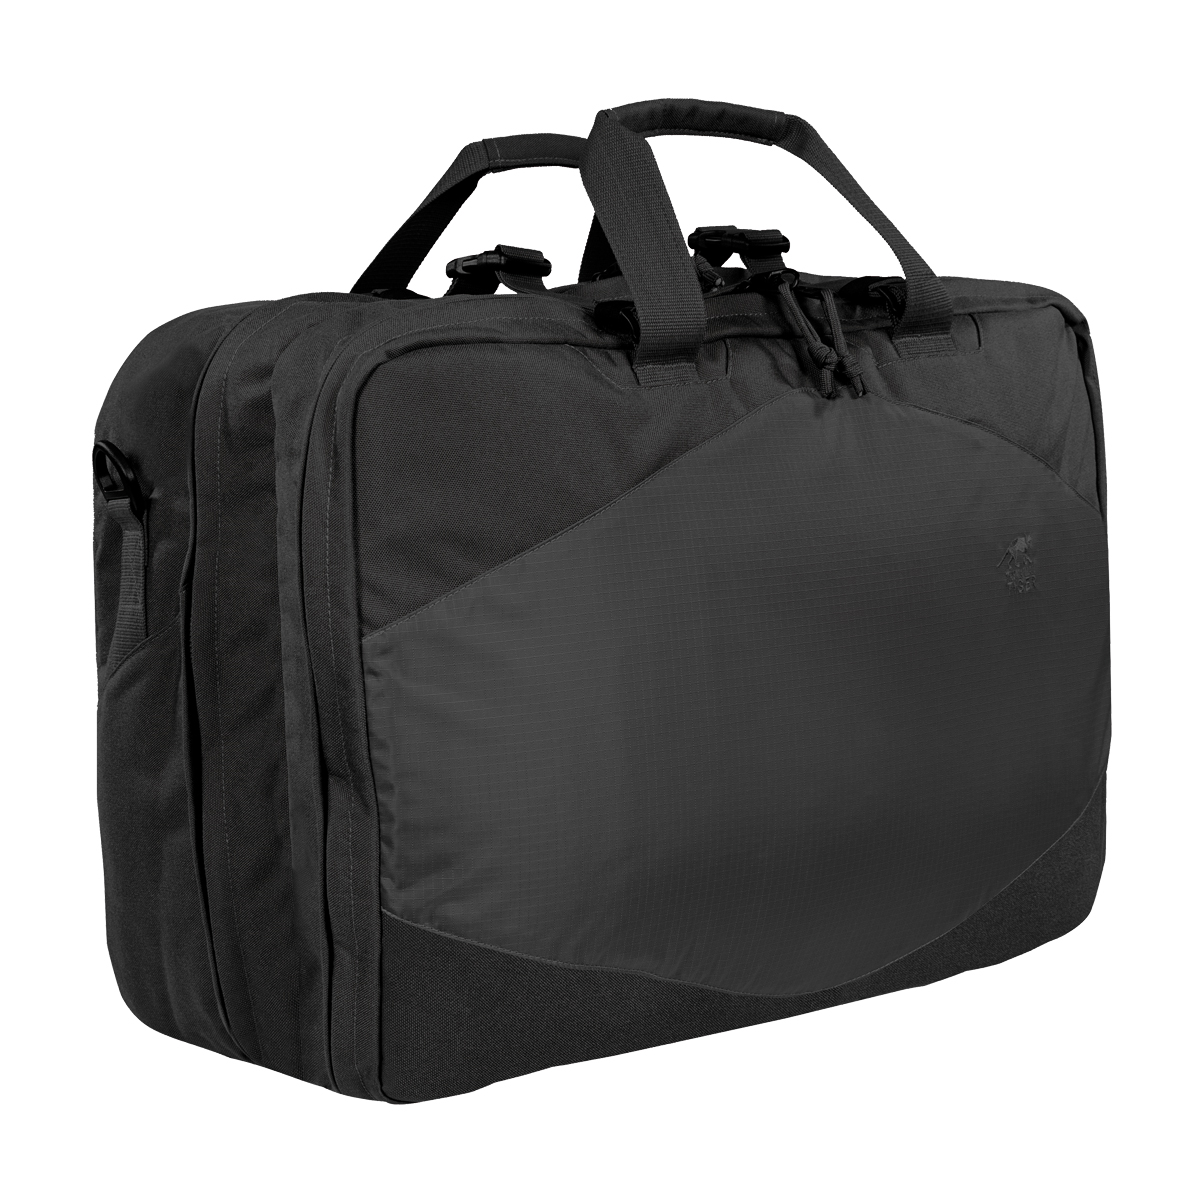 Produktbild von Tasmanian Tiger TT Tac Flightcase schwarz - 40 Liter Handgepäcktasche